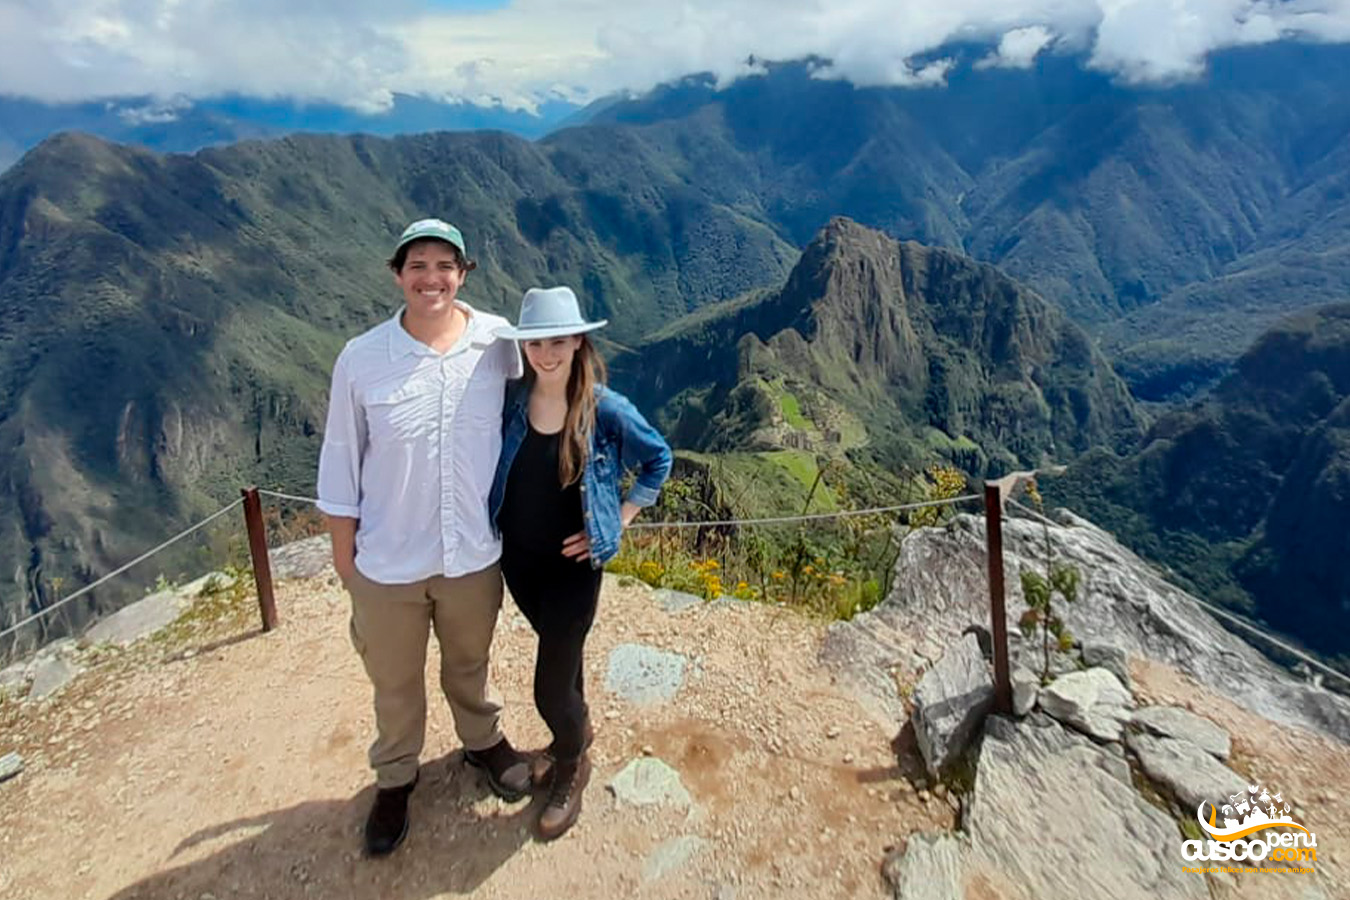 View of the Inca city of Machu Picchu from the summit of Machu Picchu Mountain. Source: CuscoPeru.com